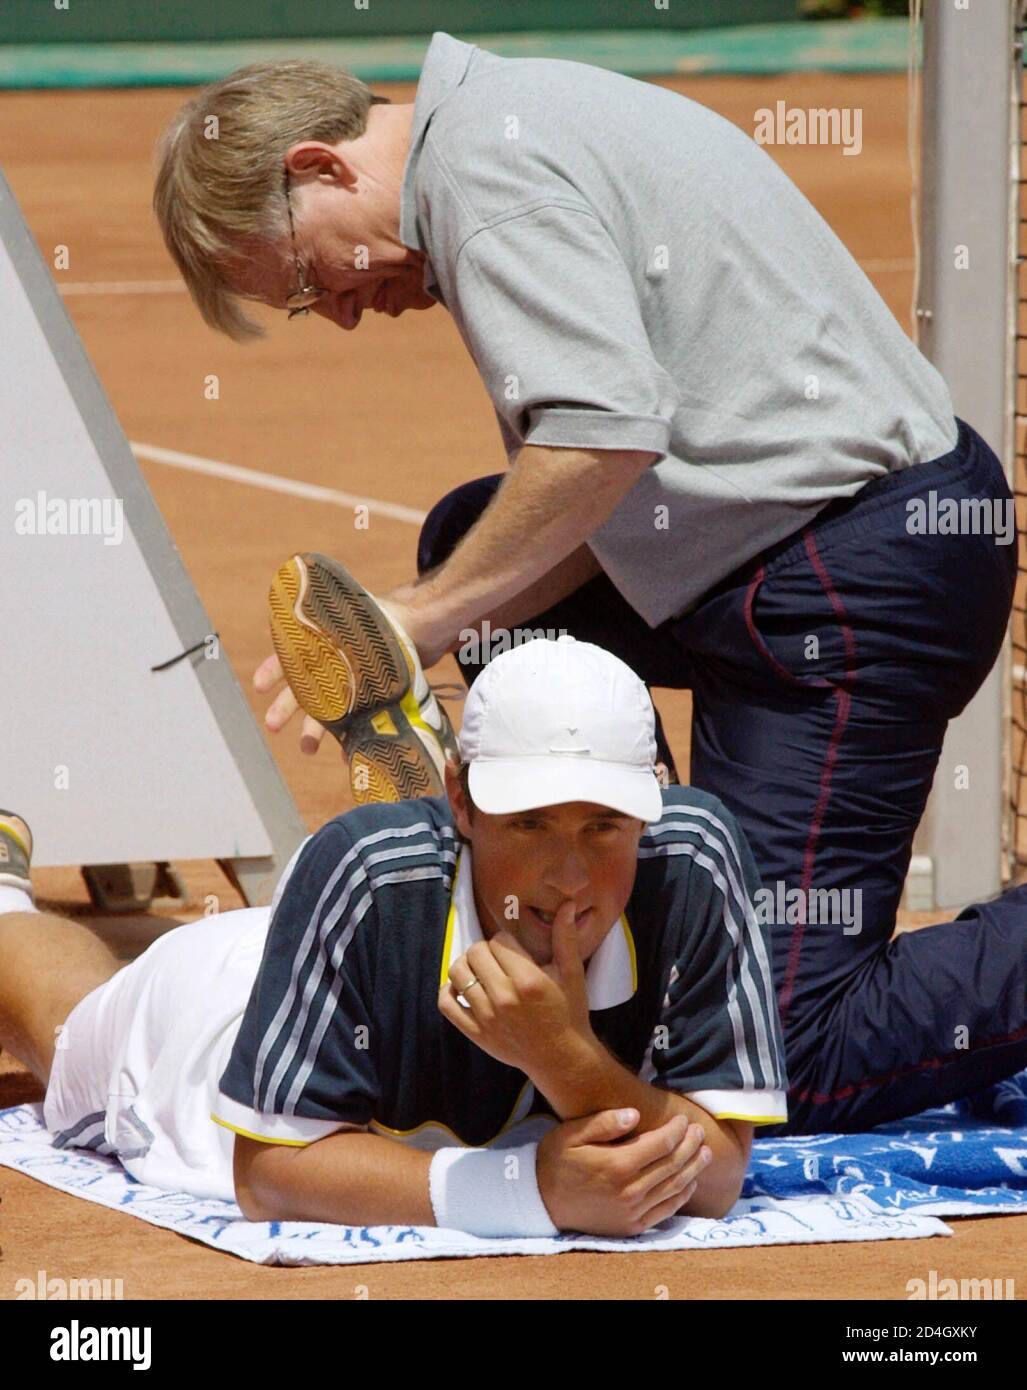 Oesterreichs Markus Hipfl gewann heute, em 25. Maggio 2001, beim St. Poeltener ATP-Tennisturnier das Semifinalspiel gegen den Tschechen Michal Tabara 6-1 5-7 6-2. Im Bild Tadar wahrend einer Behandlung durch den Physiotherapeuten im 2. Satz. HP/ Foto Stock